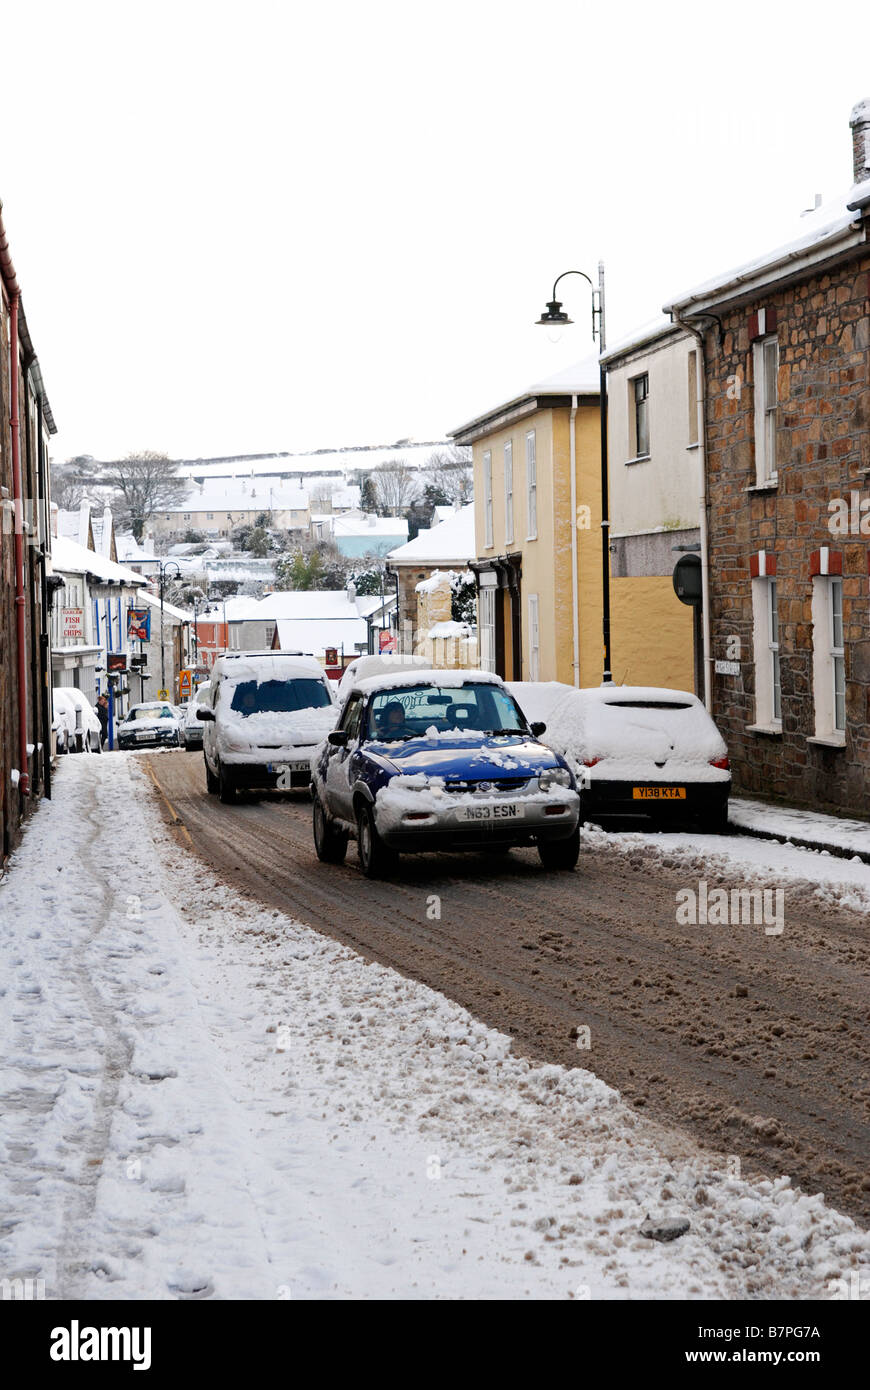 Les voitures qui circulent dans un village rempli de neige Rue à Cornwall, uk Banque D'Images